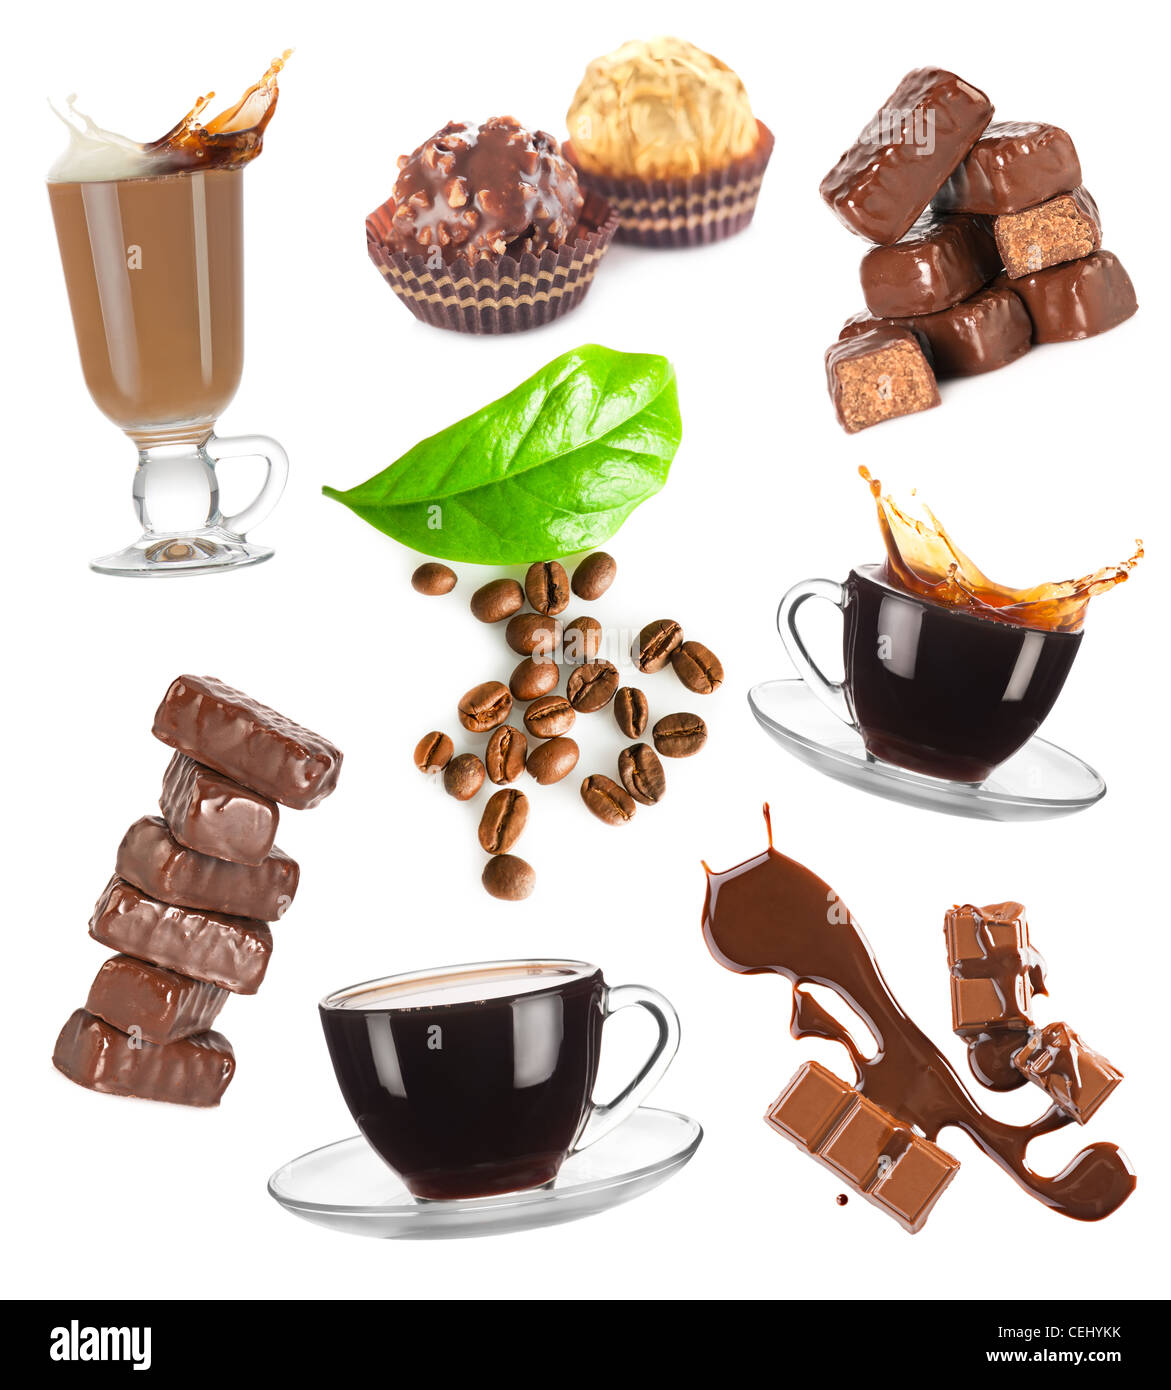 Heißen Kaffee, Bohnen und Praline setzen auf weißem Hintergrund Stockfoto